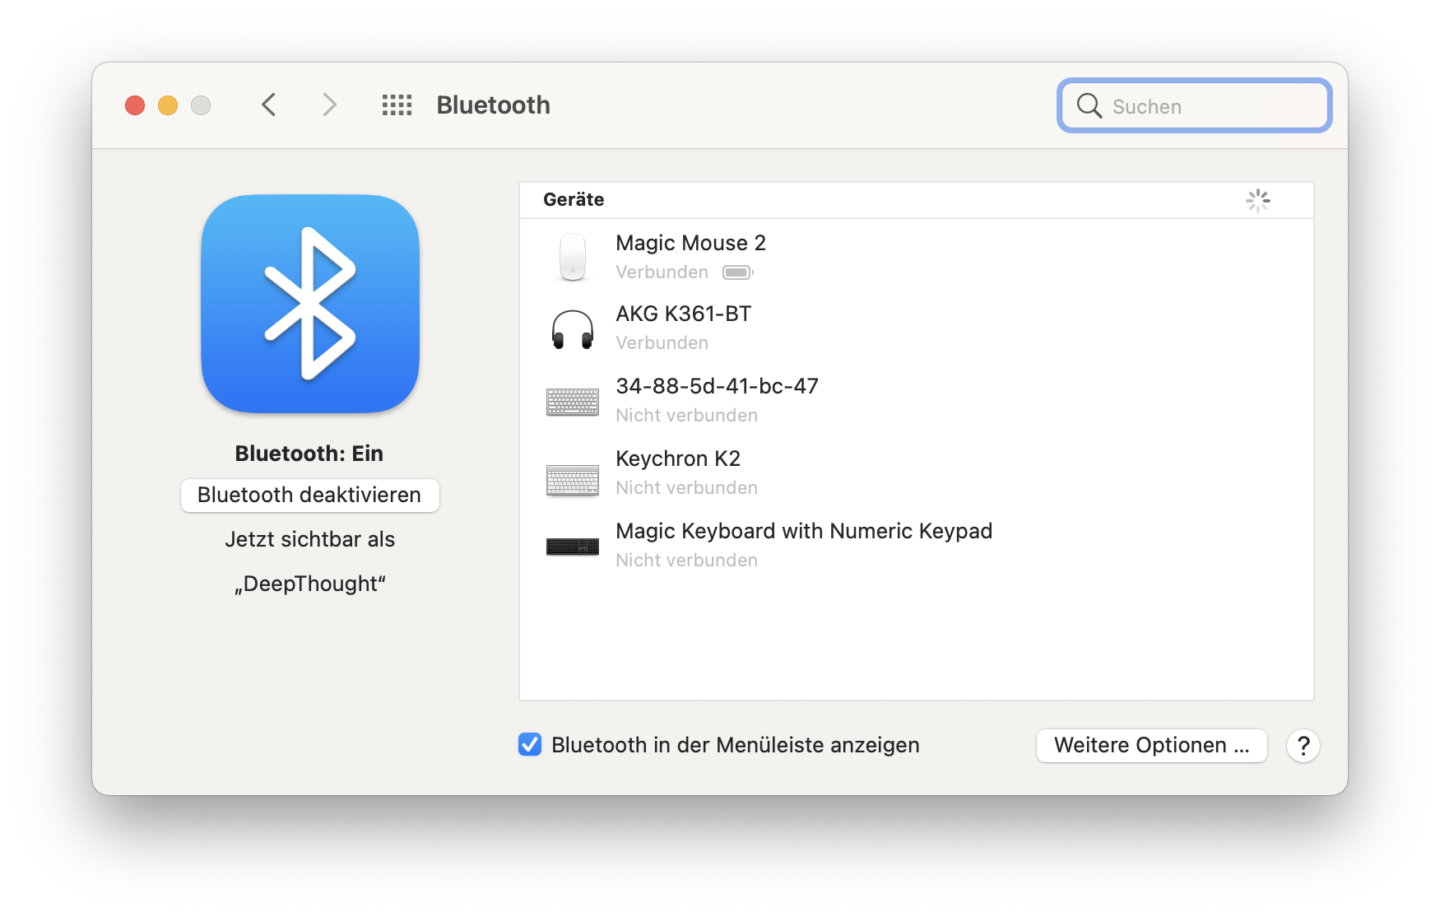 1. Überprüfen Sie die Bluetooth-Verbindung: Stellen Sie sicher, dass sowohl Ihr Mac als auch Ihr Bose Bluetooth-Gerät ordnungsgemäß gekoppelt sind.
2. Aktualisieren Sie Ihre Software: Überprüfen Sie, ob sowohl Ihr Mac als auch Ihr Bose-Gerät auf die neueste Softwareversion aktualisiert sind.